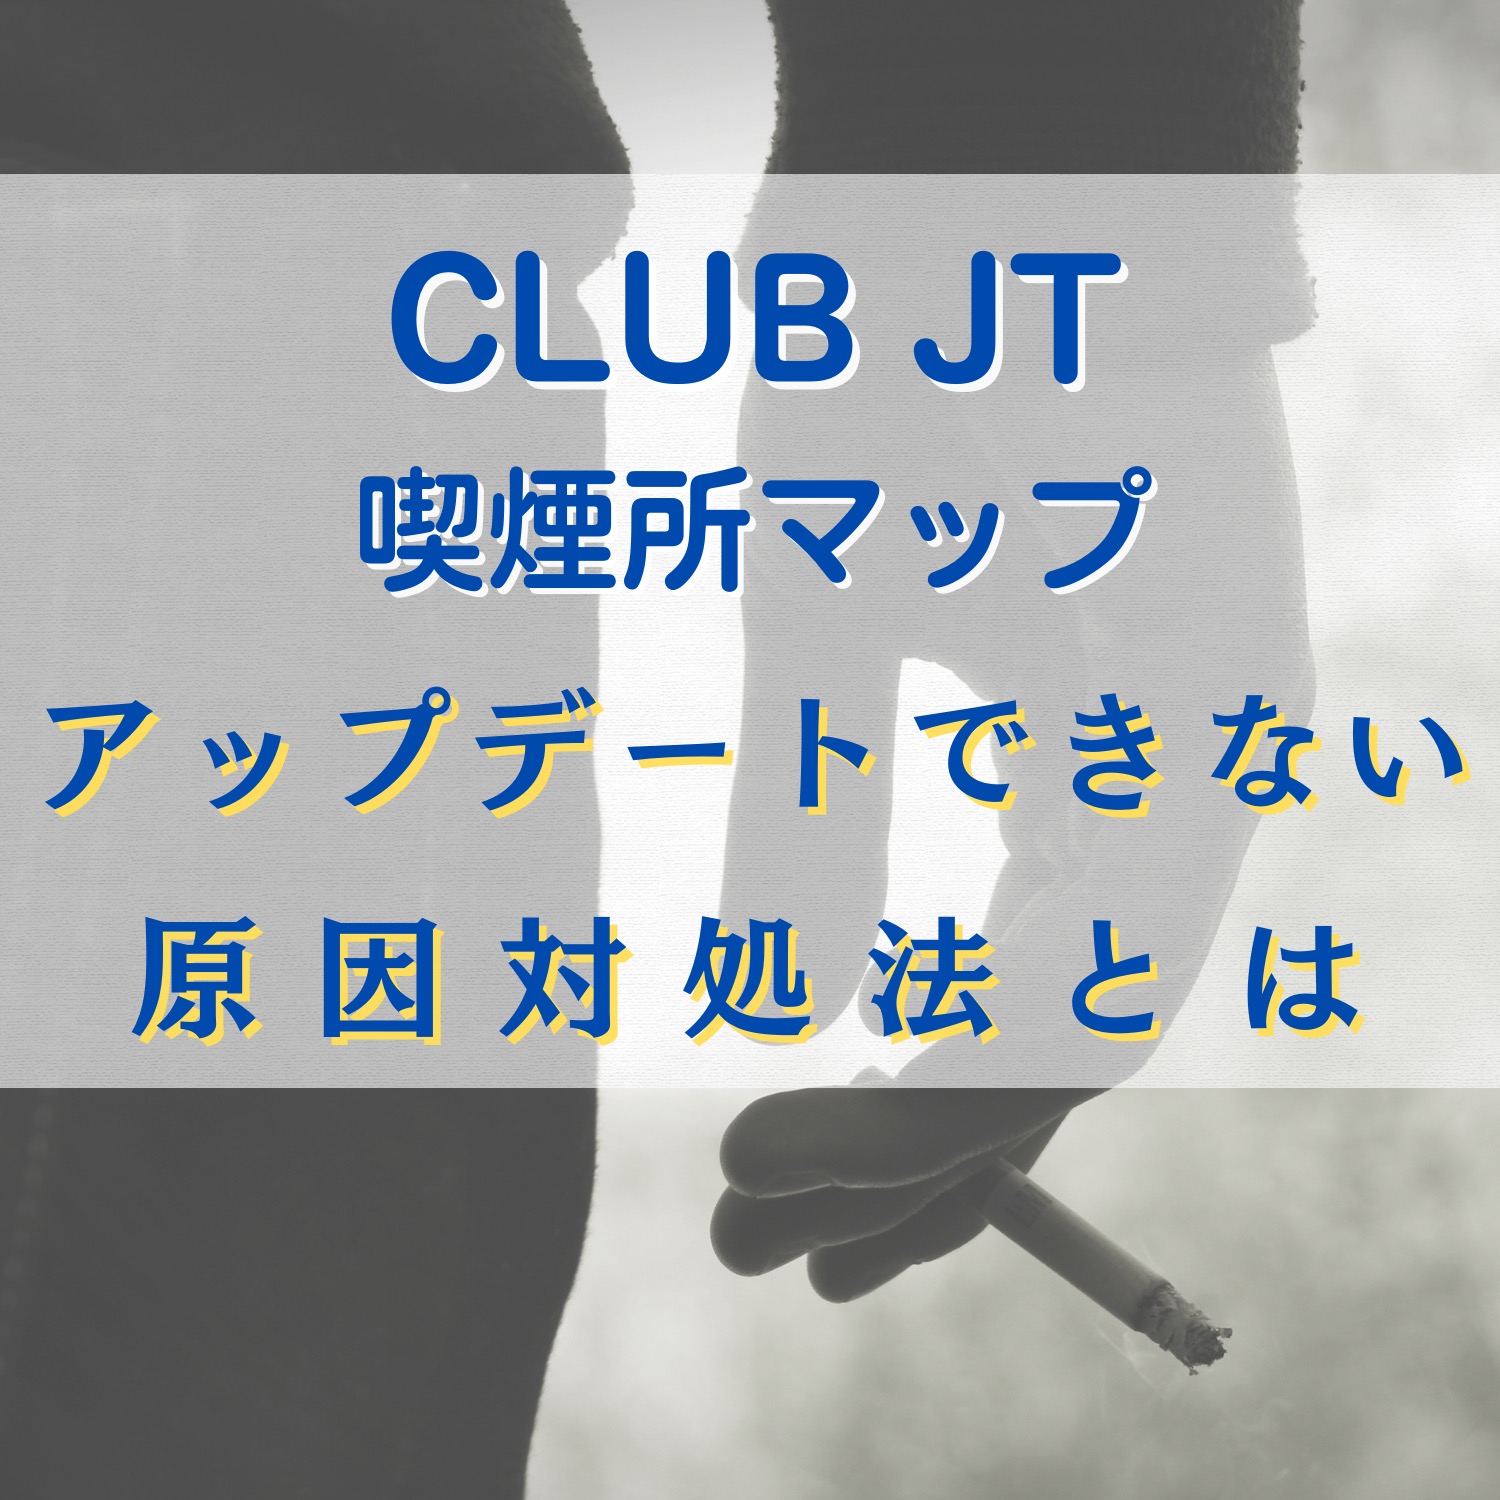 CLUB JT 喫煙所マップがアップデートできない原因と対処法とは